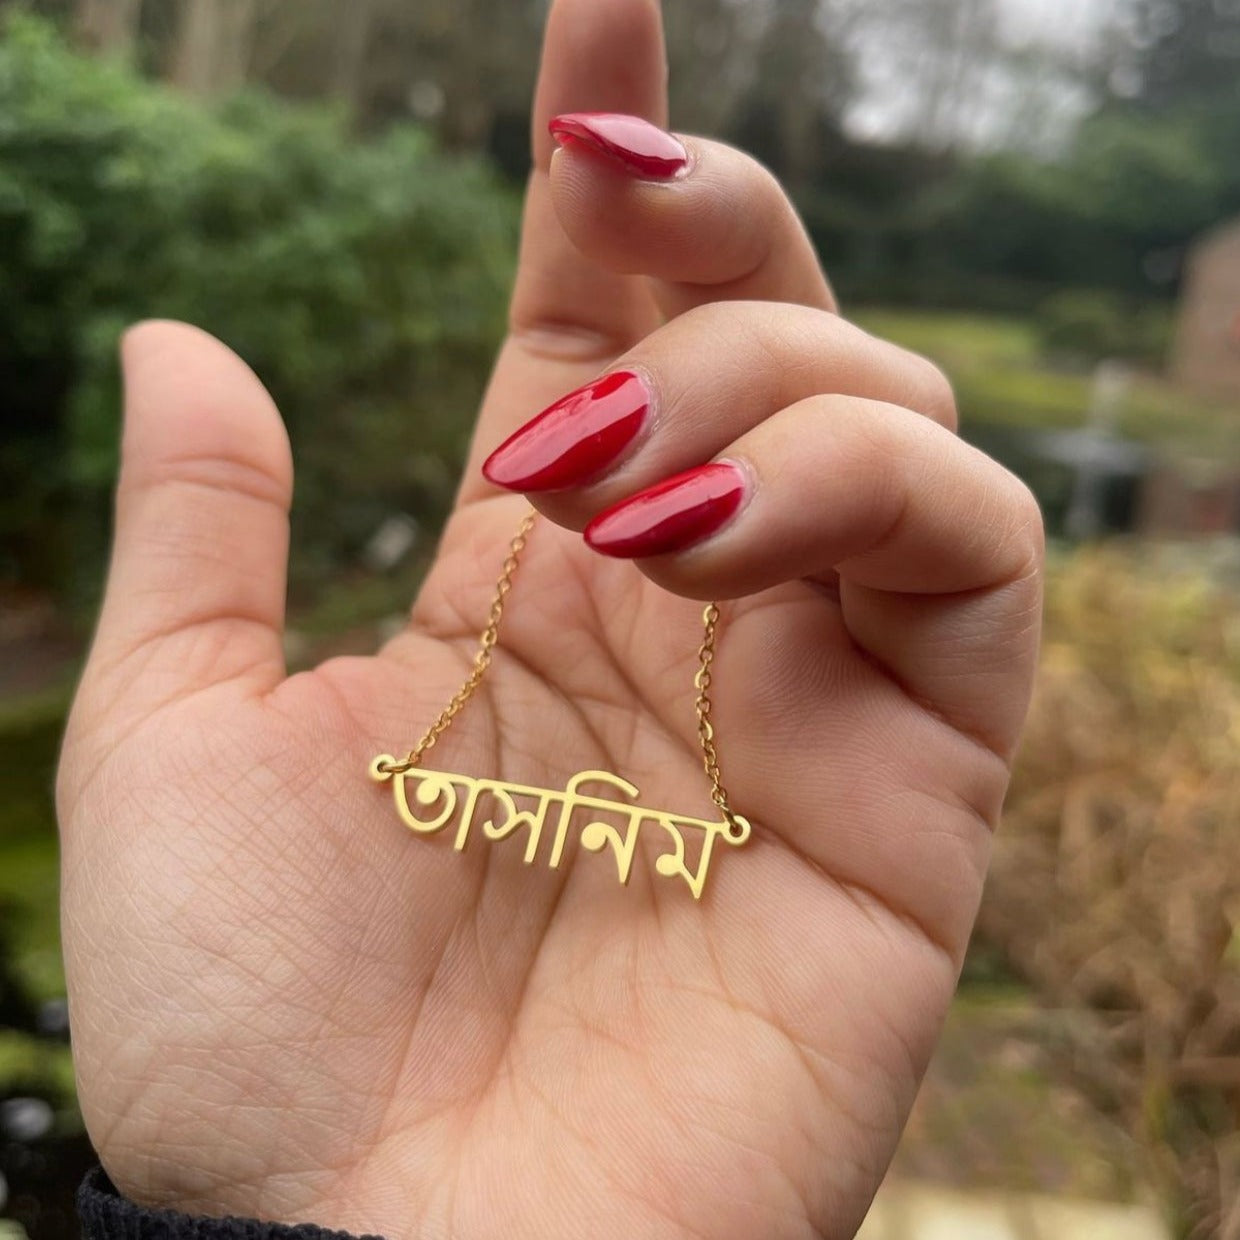 personalised bangla bengali name necklace